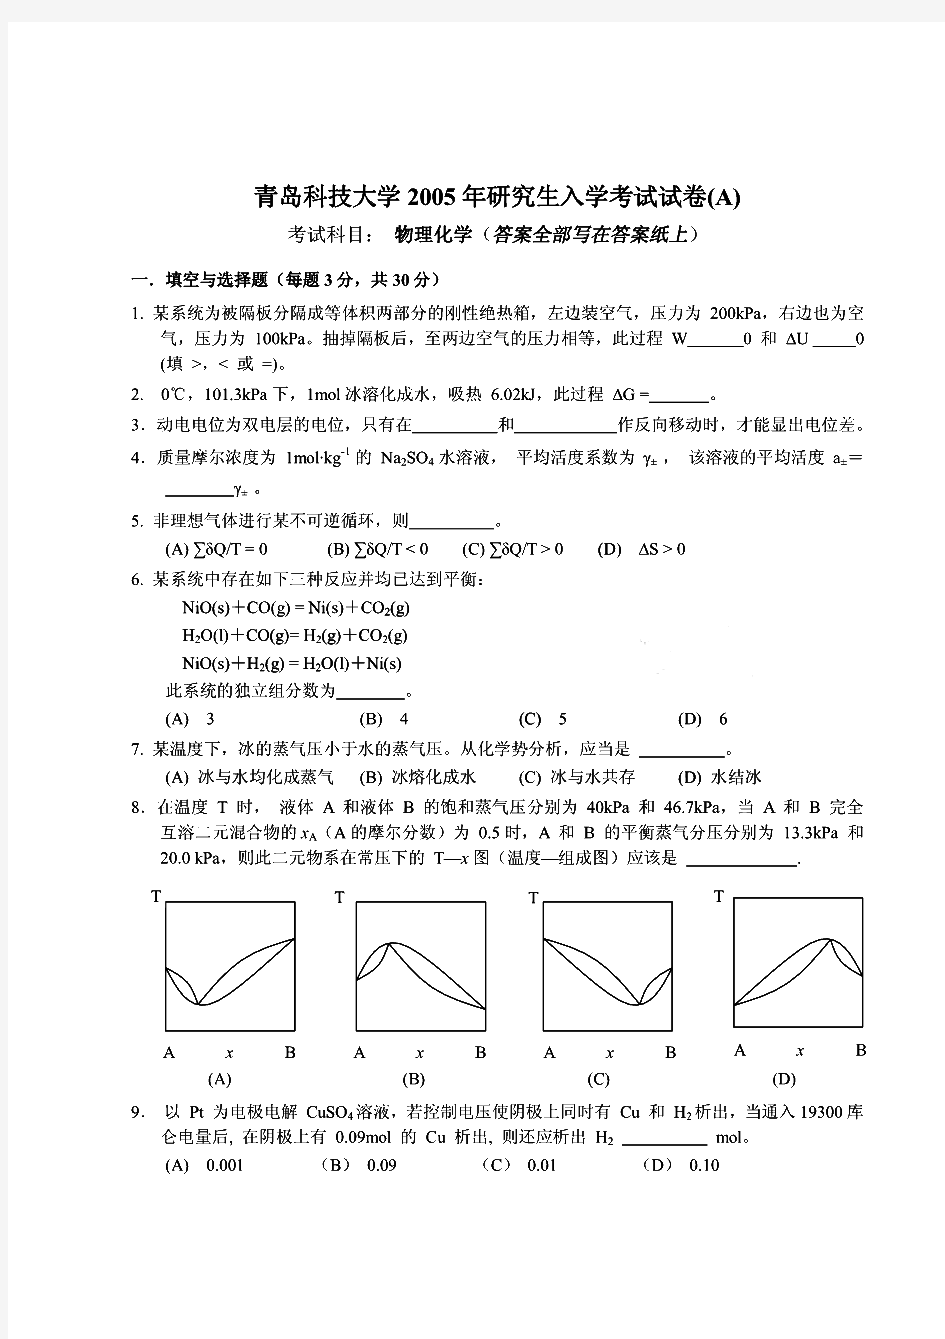 青岛科技大学物理化学历年考研试题 (2)